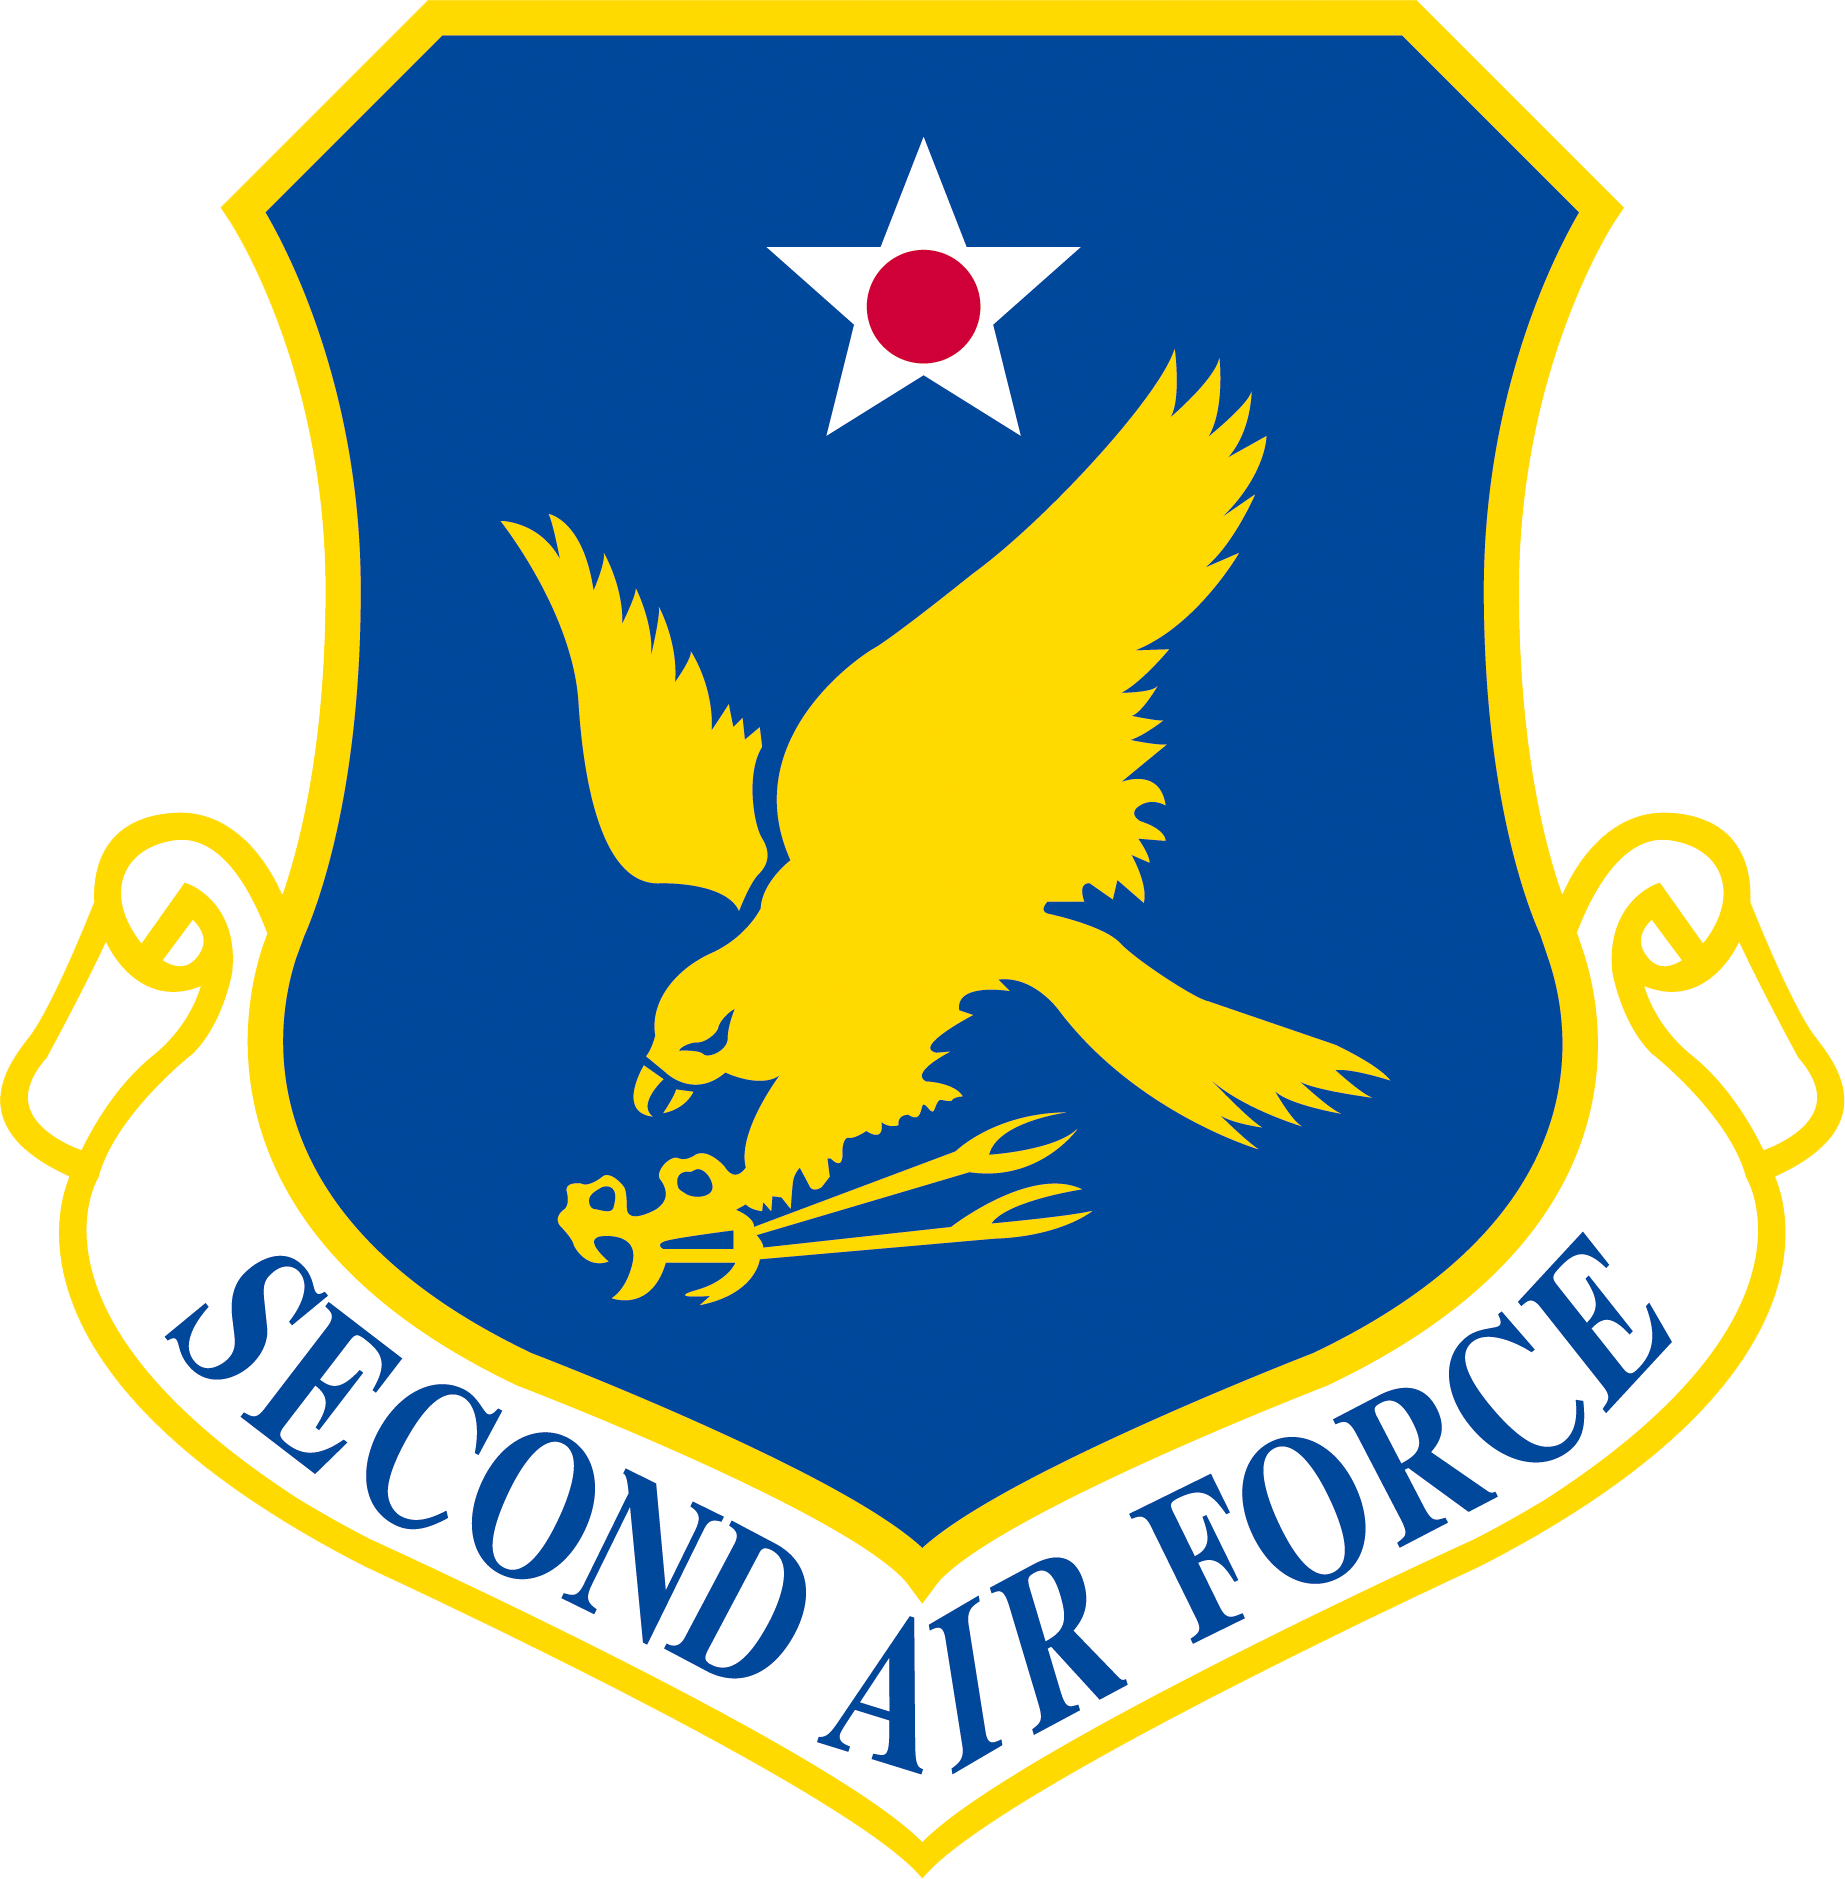 Second_Air_Force_-_Emblem_%28USAF%29.png